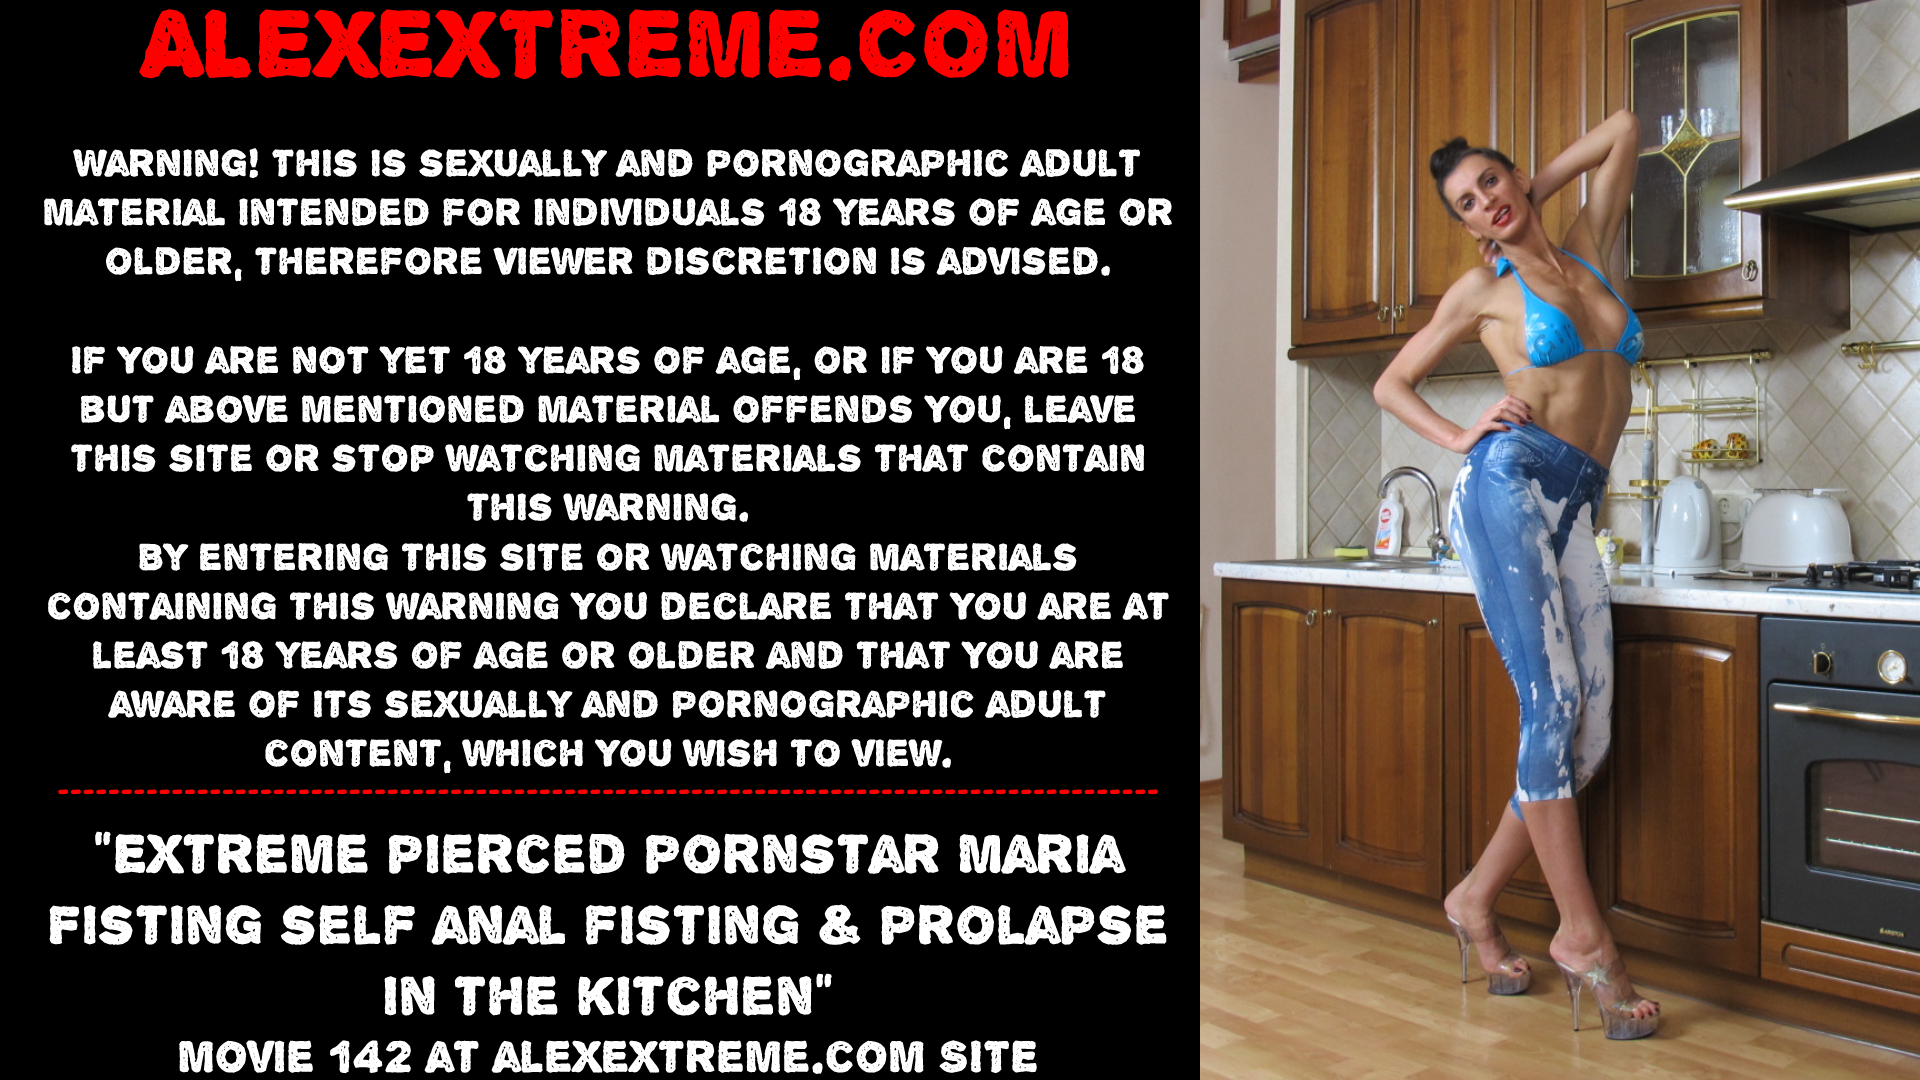 Extreme pierced pornstar Maria Fisting do anal fisting